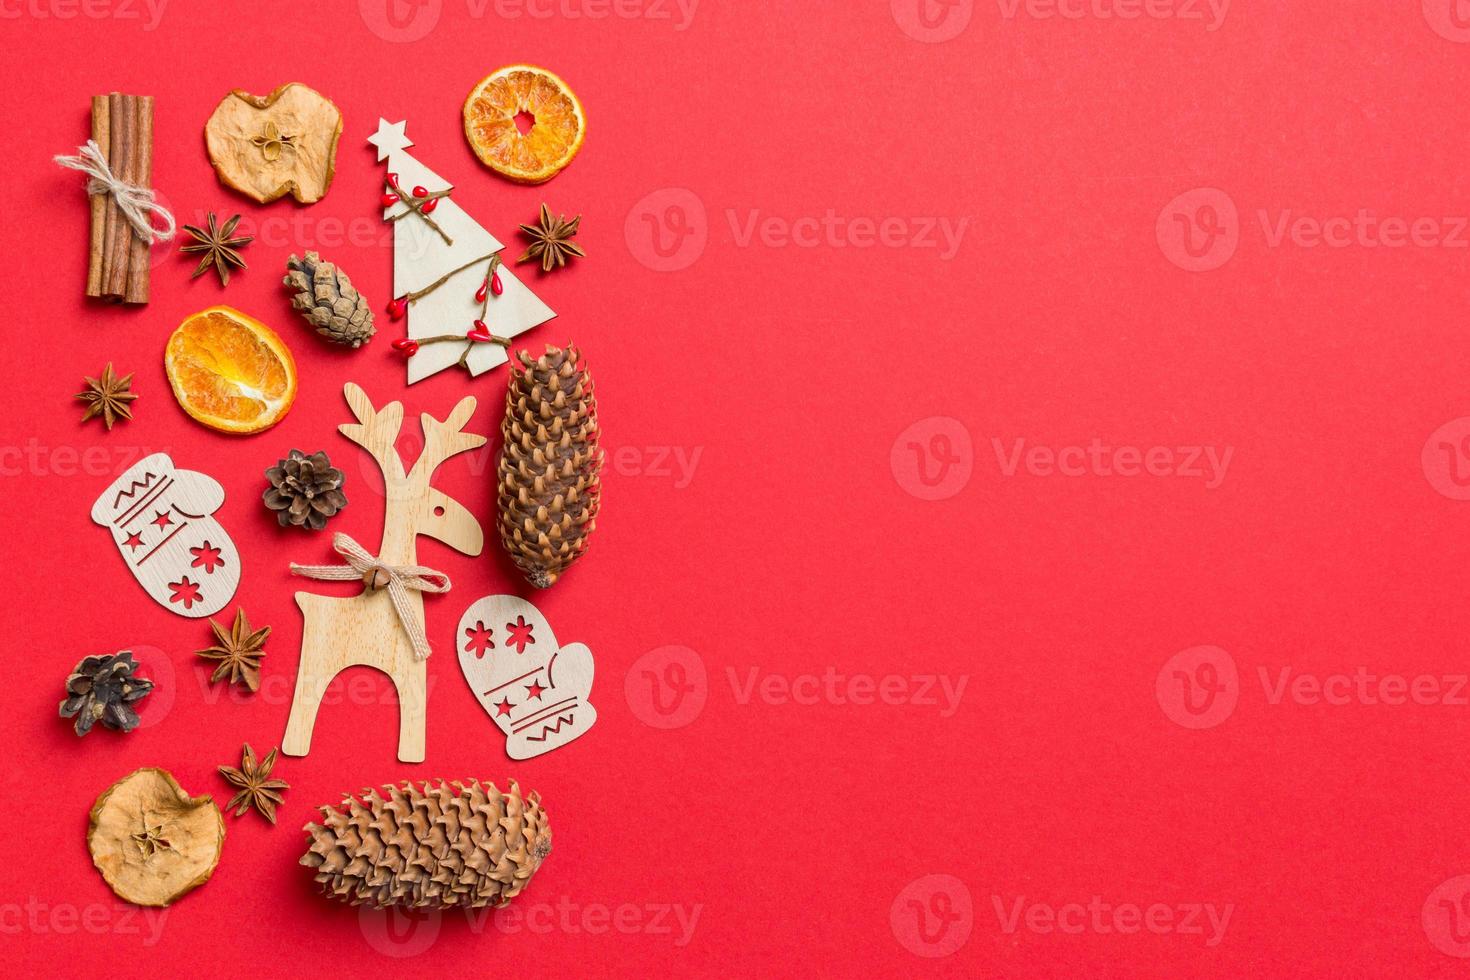 vista superior do fundo vermelho decorado com brinquedos festivos e renas de símbolos de natal e árvores de ano novo. conceito de férias com espaço de cópia foto